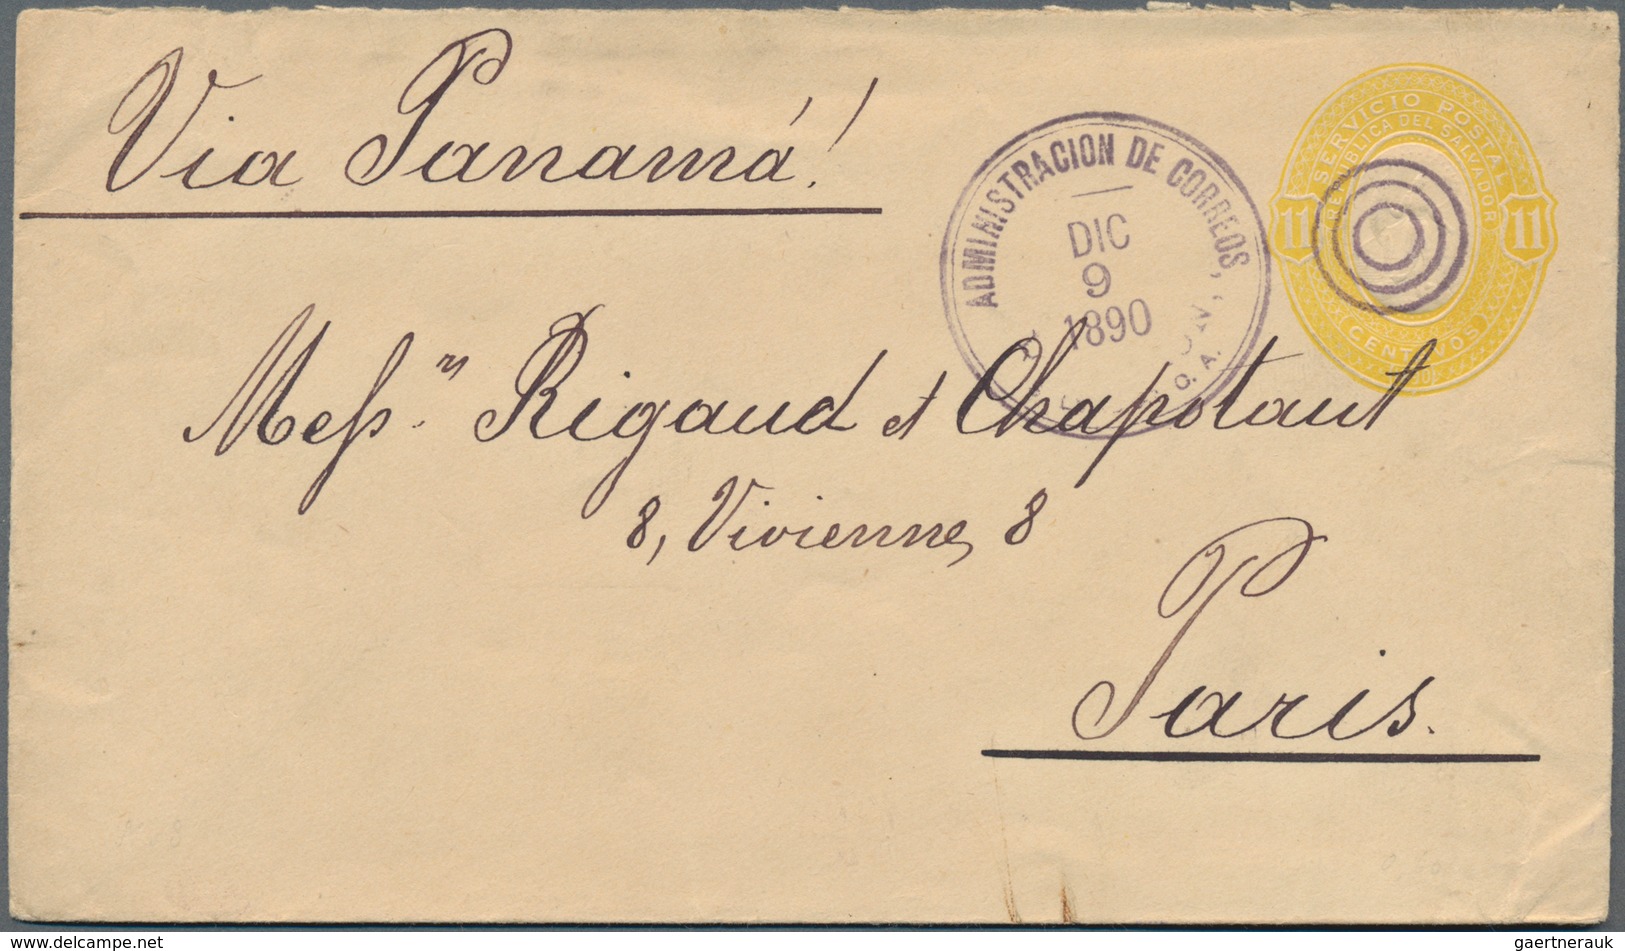 El Salvador - Ganzsachen: 1890, 15 Staionery Envelopes Valuing 5, 10, 11,20,22 Centavos All Used On - Salvador